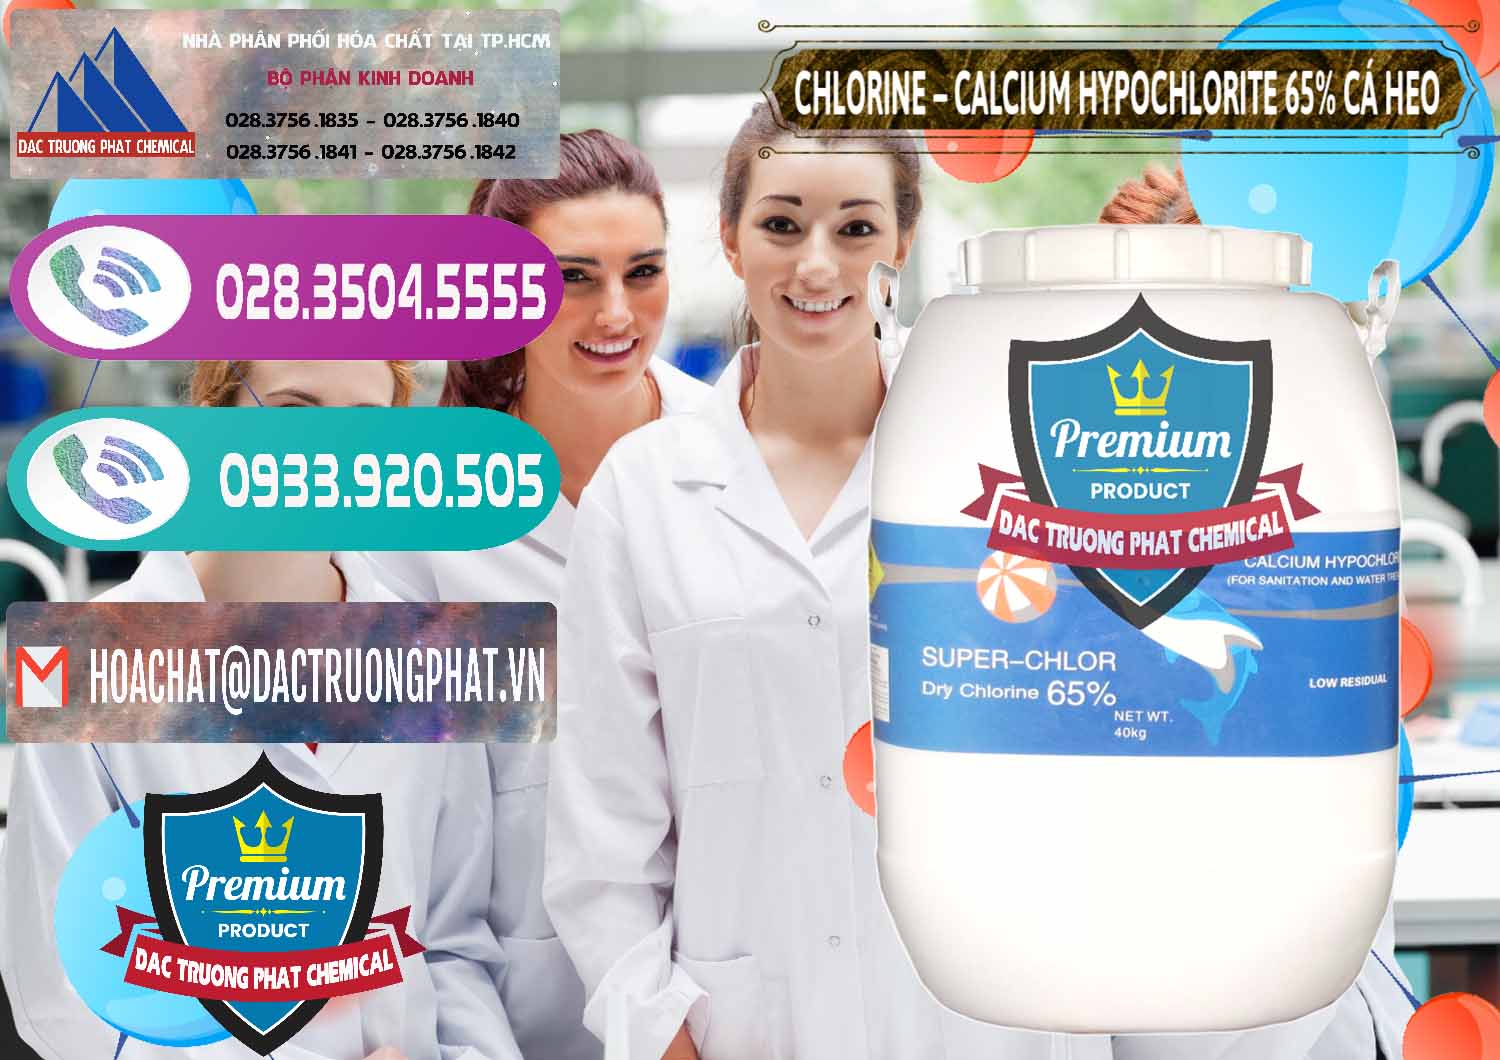 Cty bán ( phân phối ) Clorin - Chlorine Cá Heo 65% Trung Quốc China - 0053 - Kinh doanh - cung cấp hóa chất tại TP.HCM - hoachatxulynuoc.com